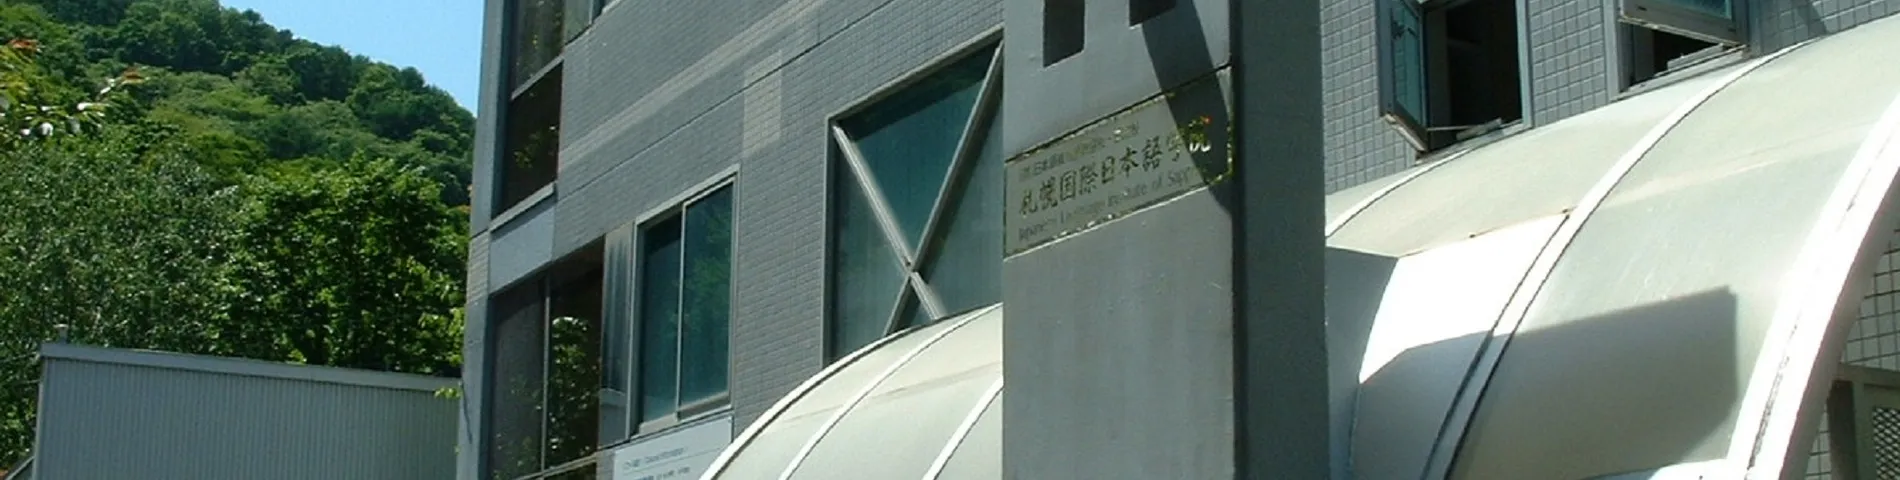 Japanese Language Institute of Sapporo Bild 1